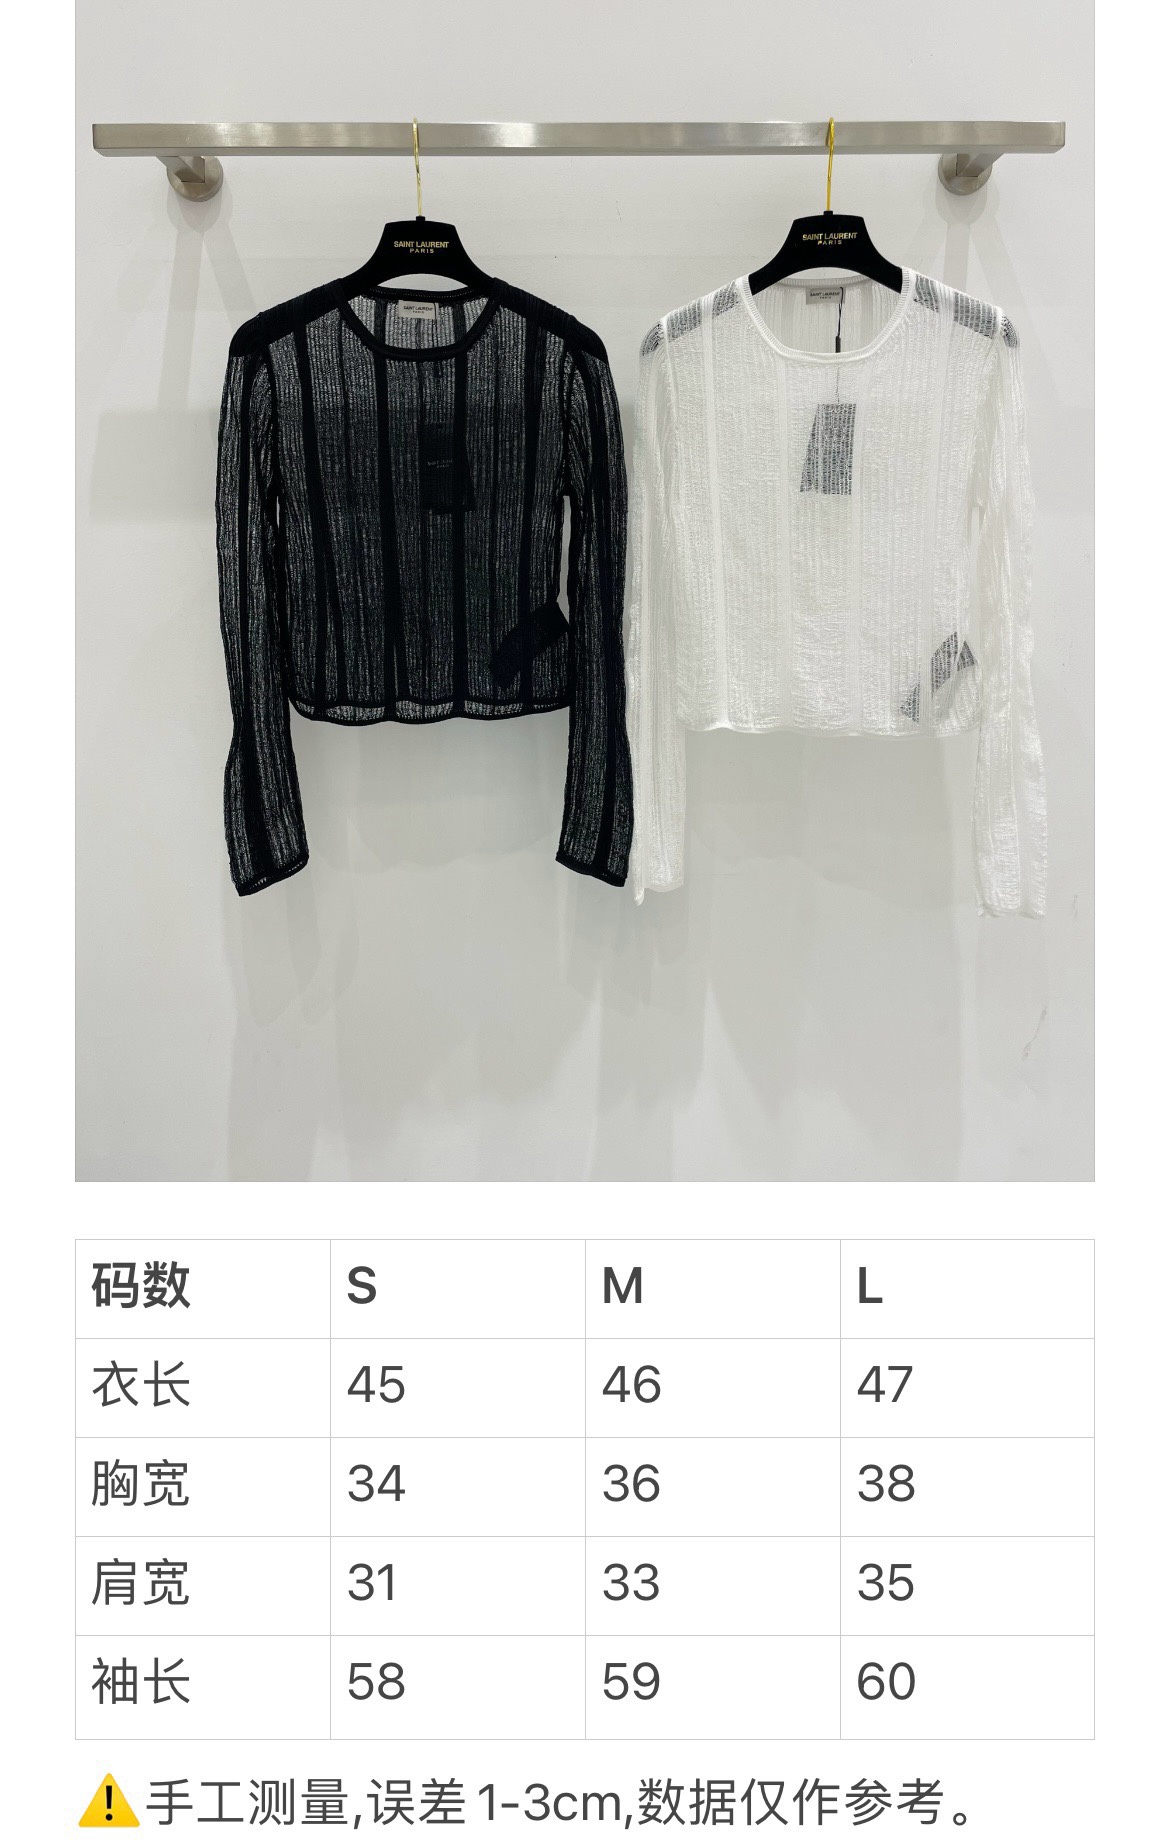 SaintLauren新品24春夏透明罩衫绝美极简设计颜色黑白尺码36.38.40